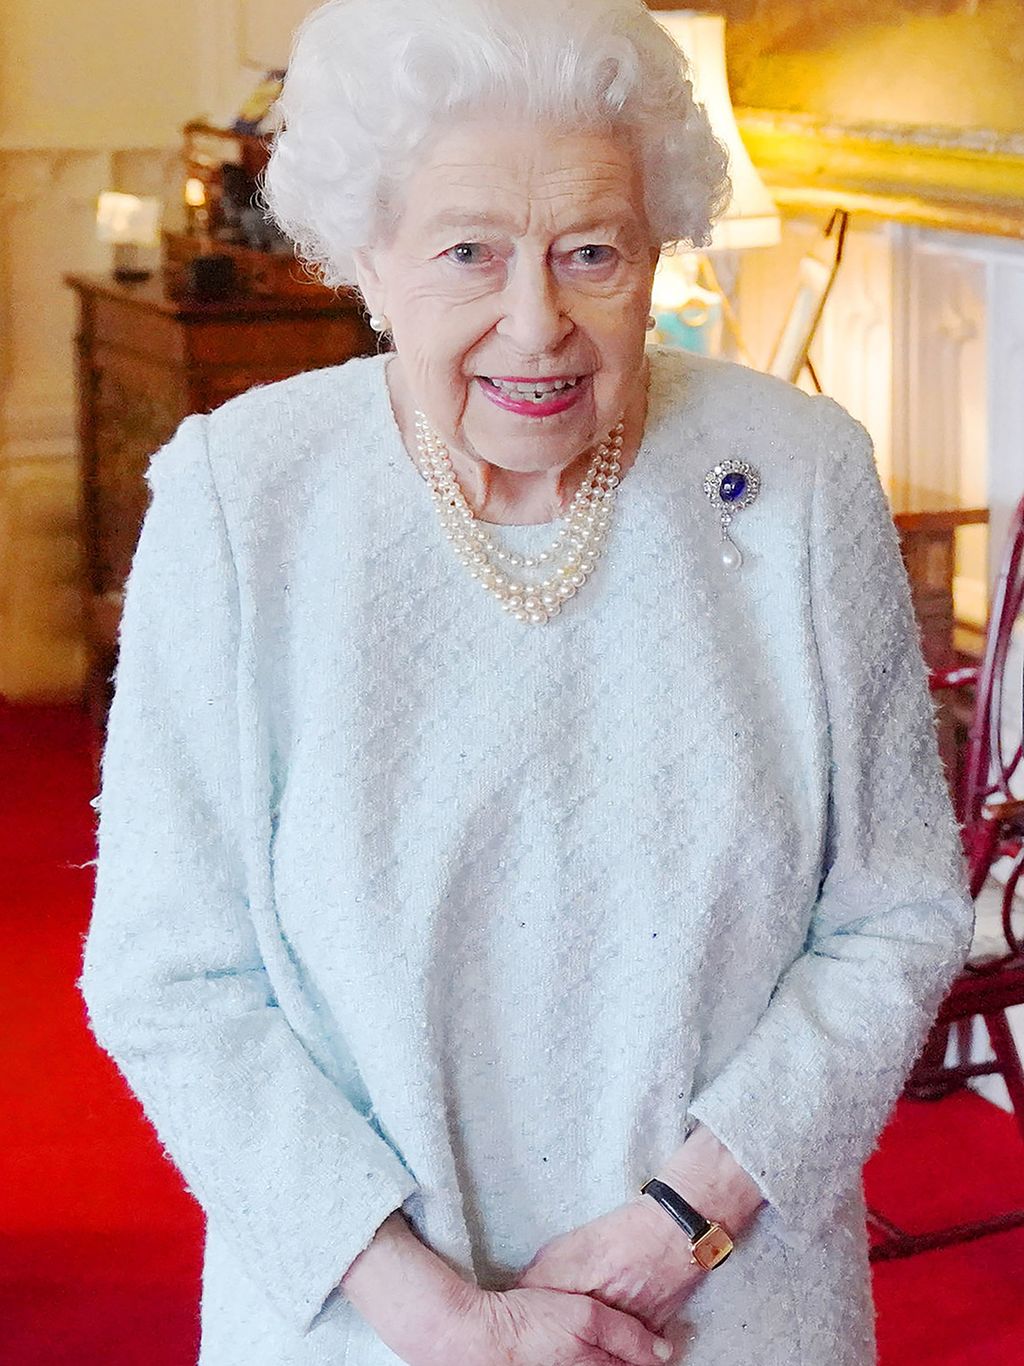 Kuningatar Elisabetin turvatoimia kiristetään – syynä joulupäivänä sattunut huolestuttava välikohtaus